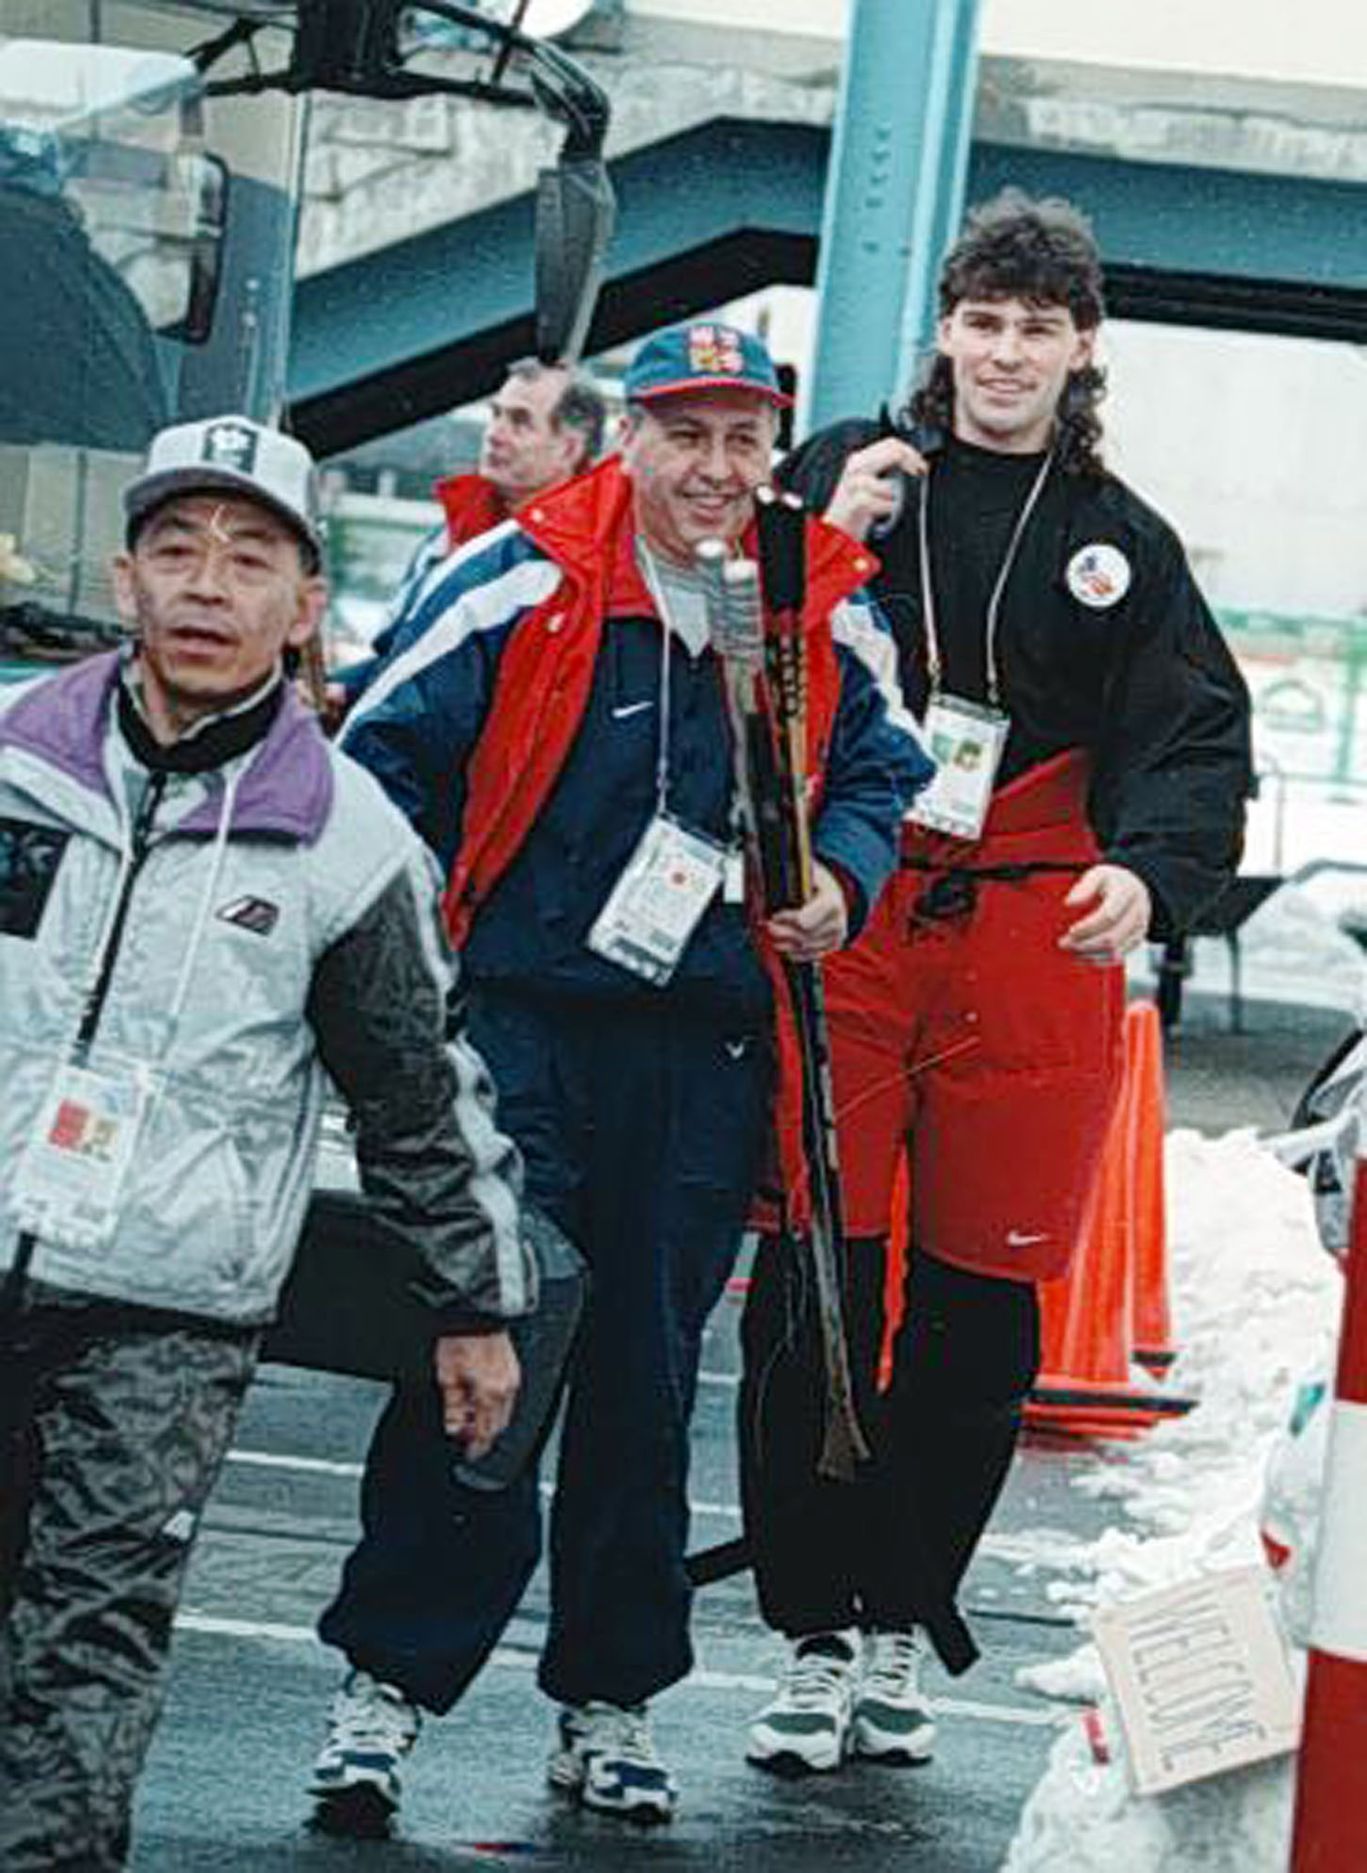 Archivní snímky z ZOH Nagano 1998 - hokej. Jágr a masér Šašek